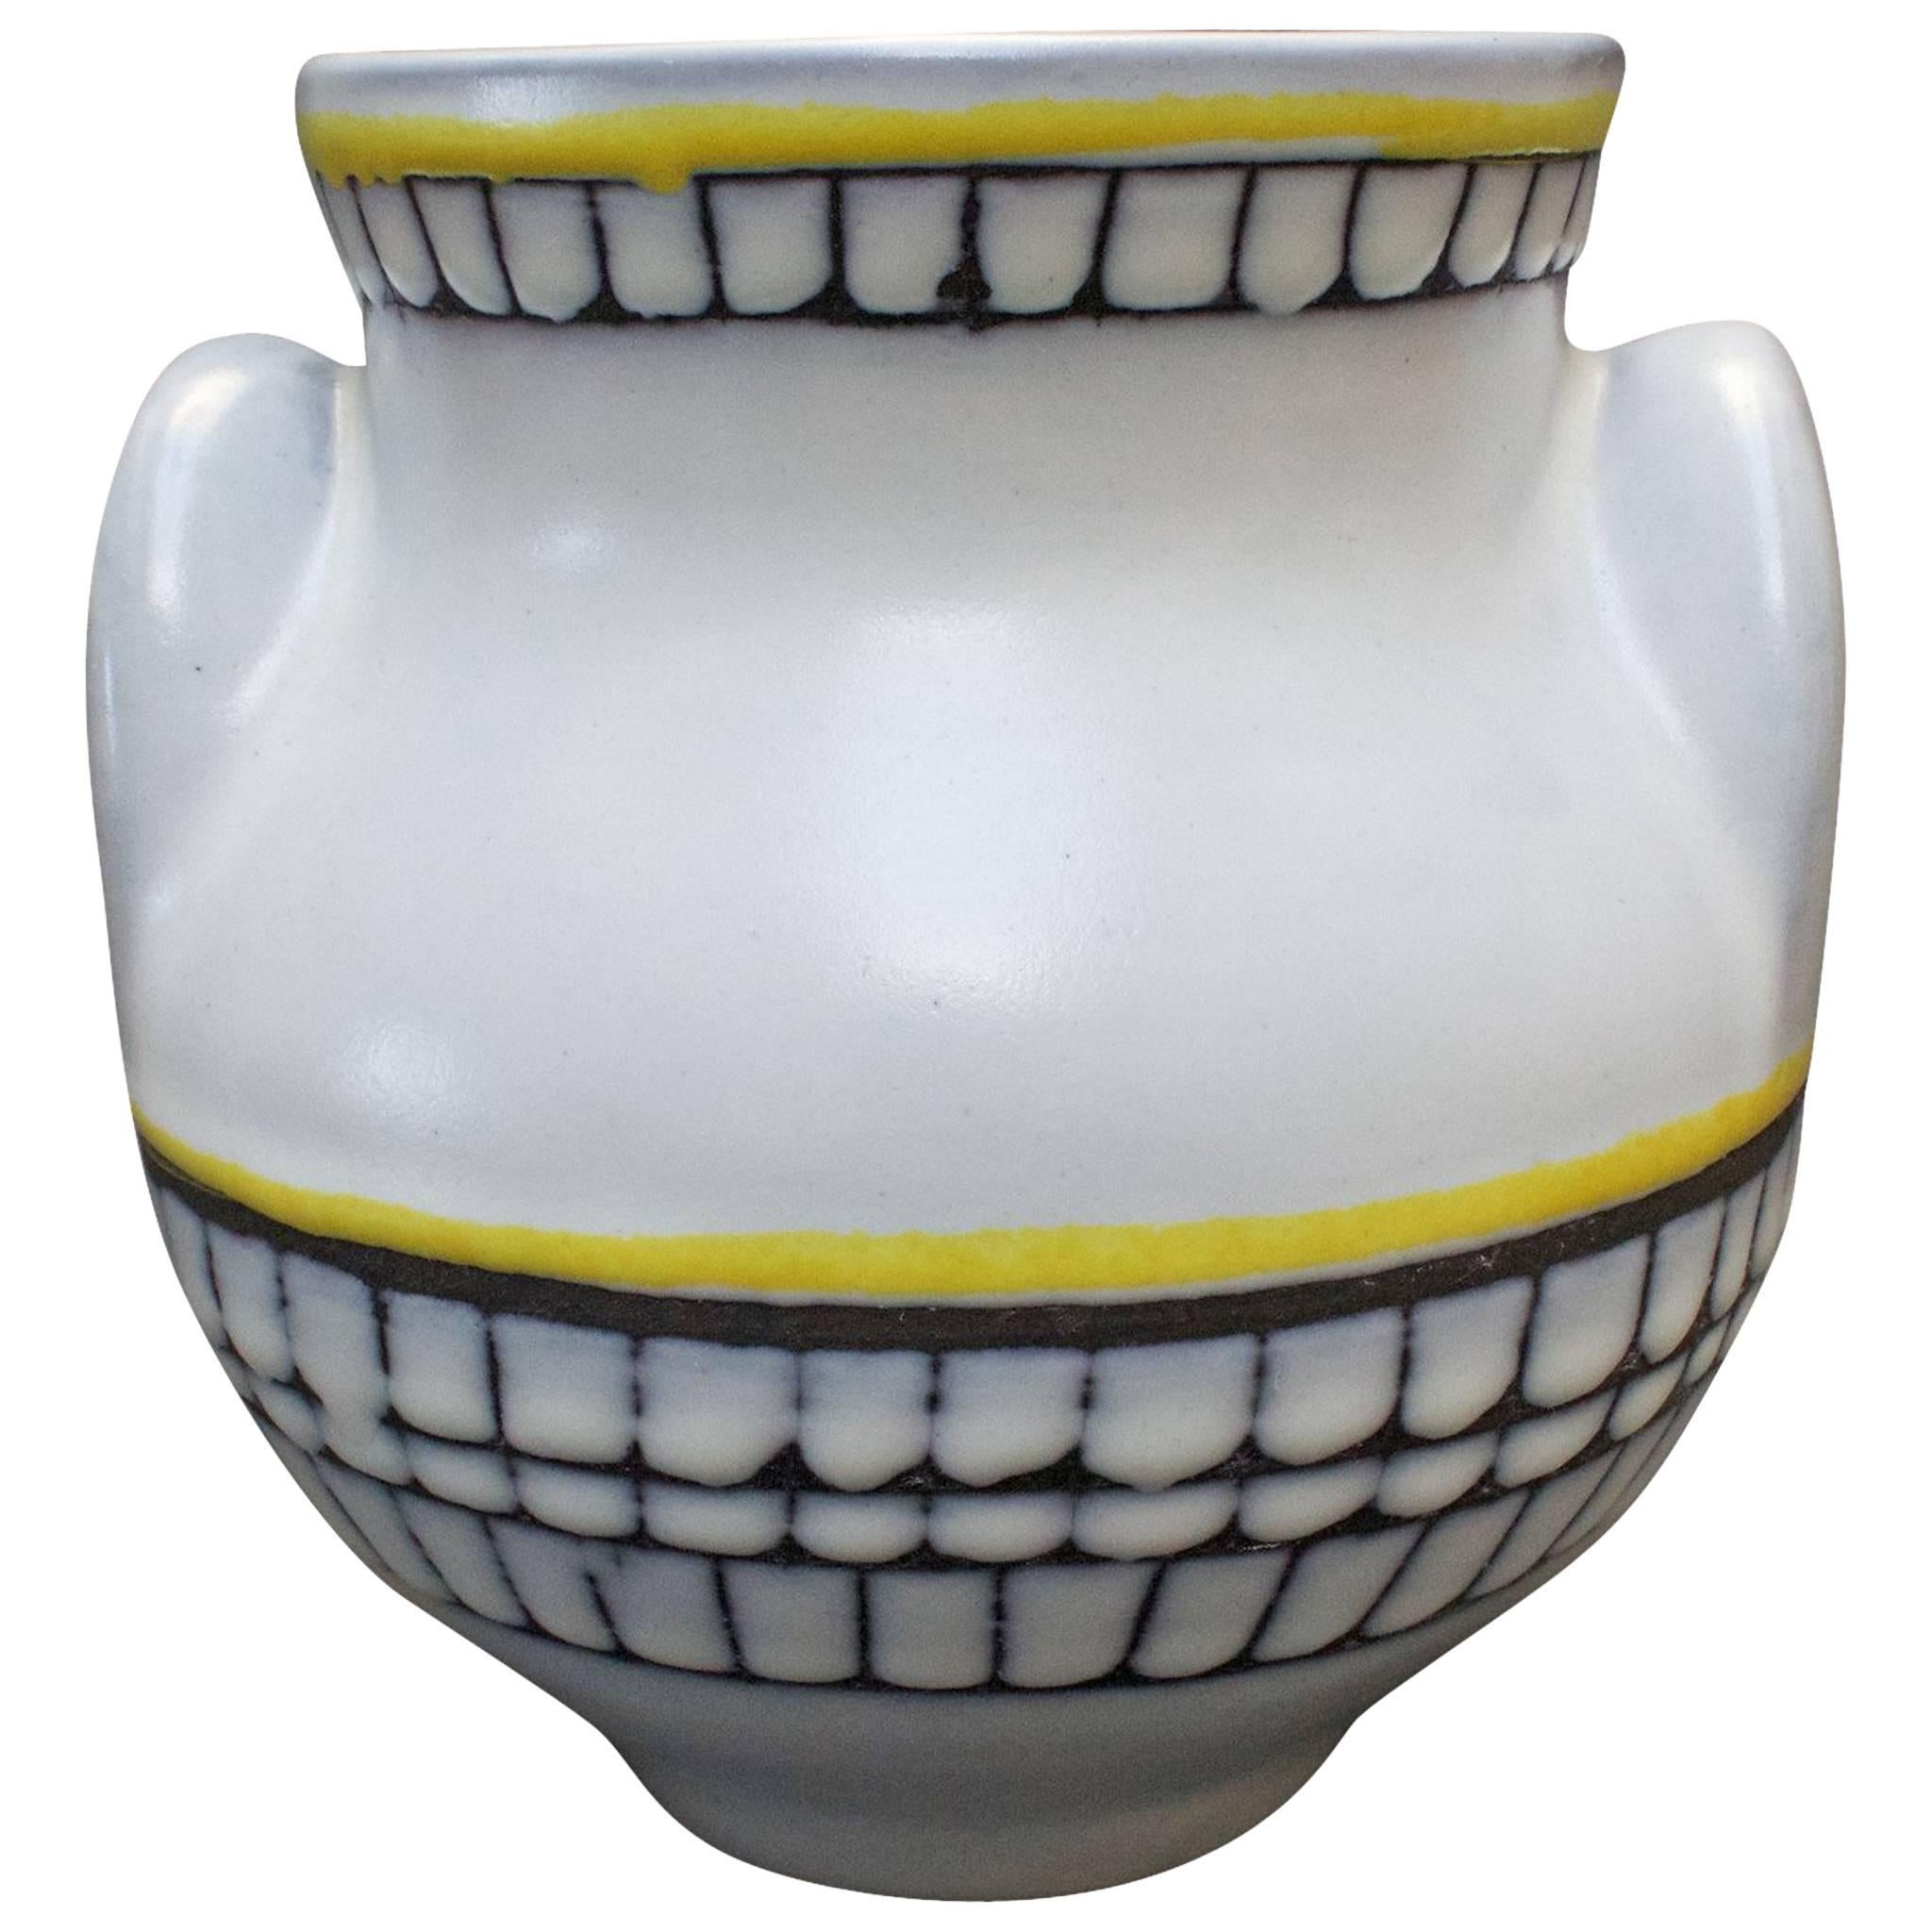 Ceramic 'Eared' Vase (Vase à Oreilles) by Roger Capron, Vallauris, France 1950s